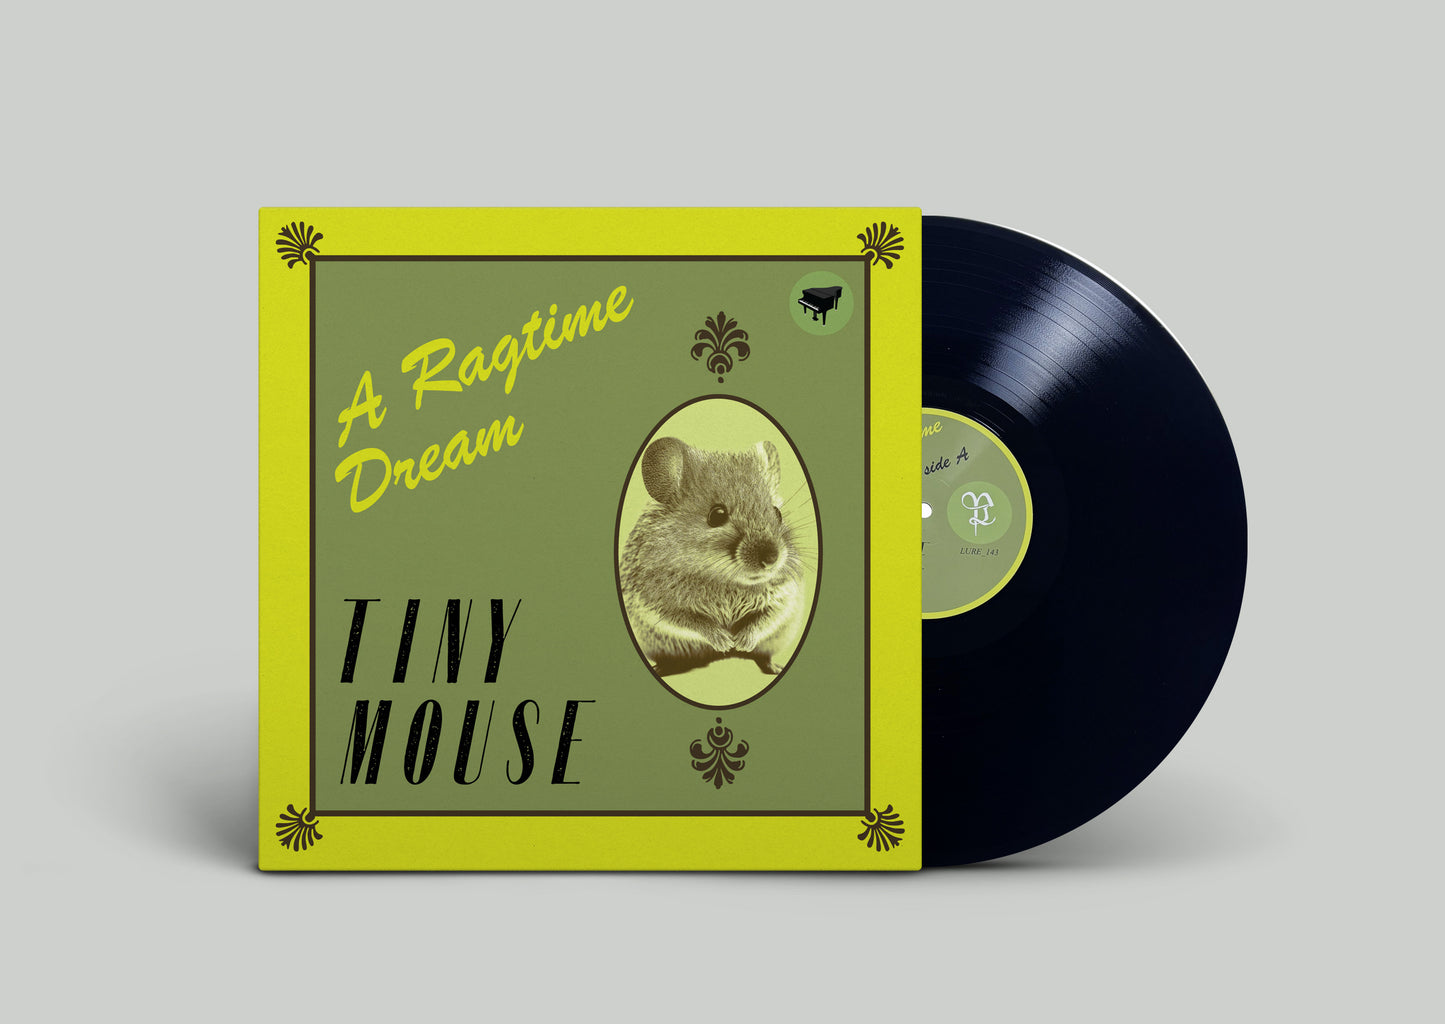 TINY MOUSE "A Ragtime Dream" Vinyl LP (2 color options)